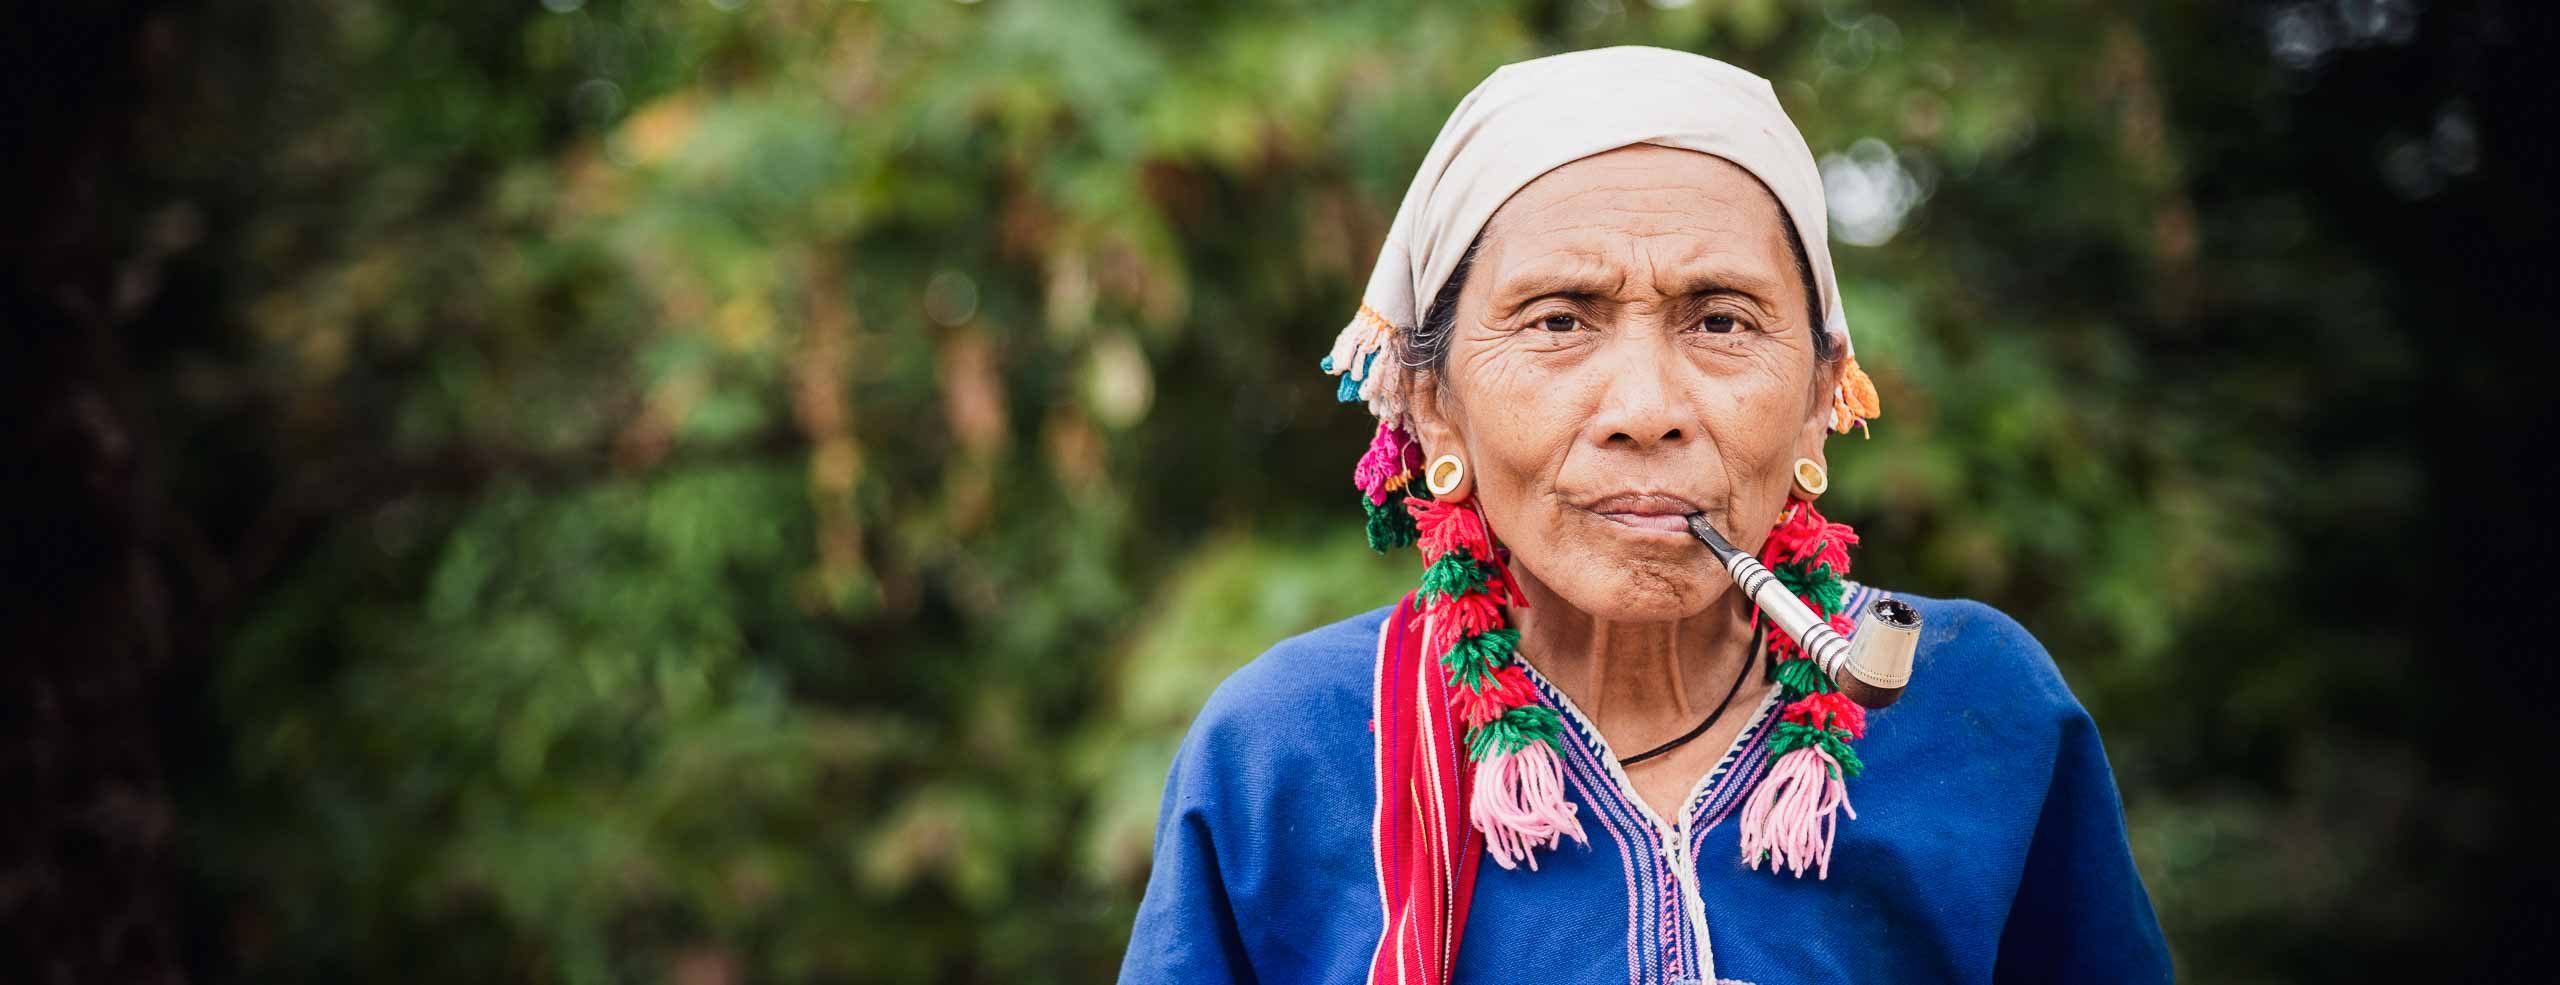 Portrait d'une femme de l'ethnie Karen rencontrée dans les montagnes en Thaïlande. Elle porte des vêtements et bijoux traditionnels et fume une grande pipe. Elle regarde l'objectif.